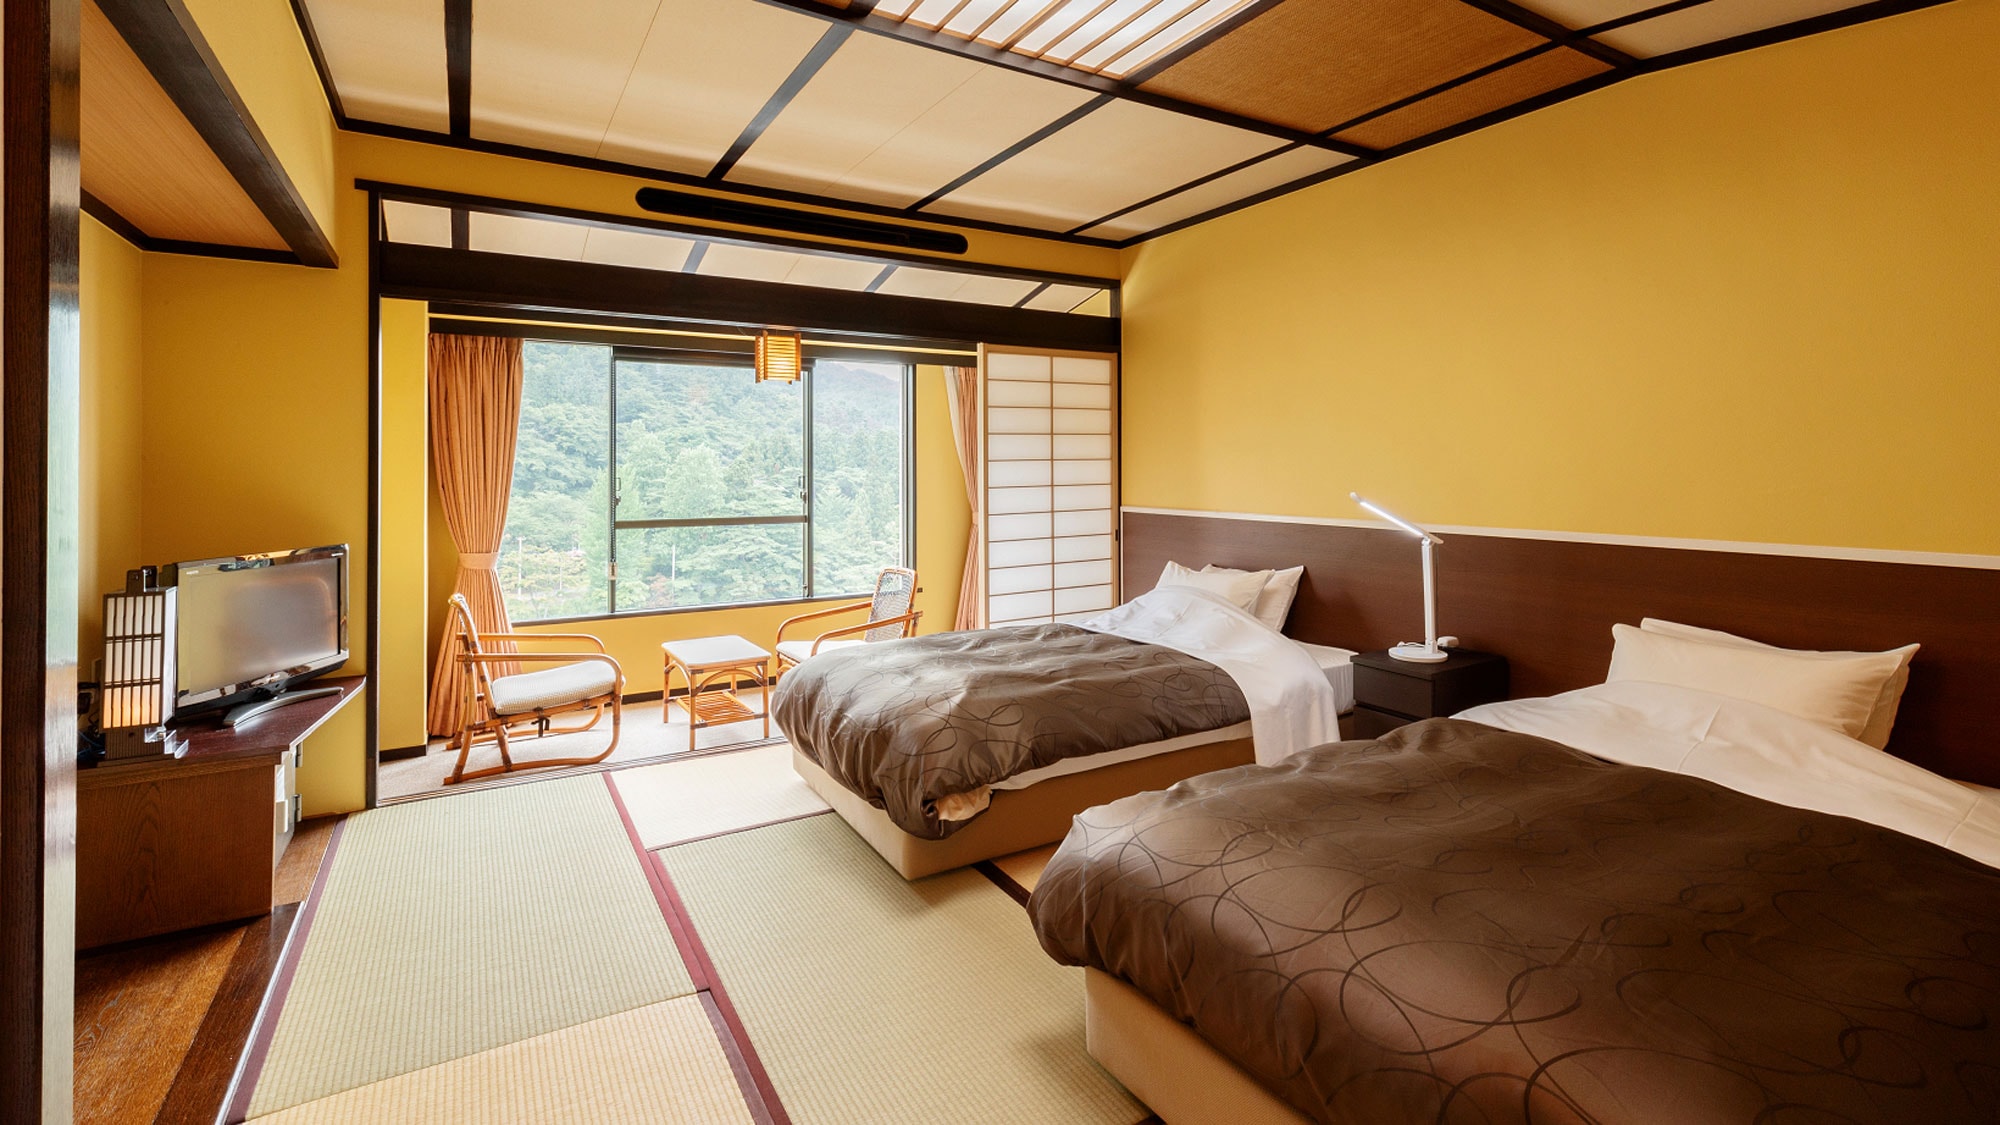 ห้องเตียงแฝดสไตล์ญี่ปุ่น - ห้องเตียงแฝดพร้อมเตียง 2 เตียงในเสื่อทาทามิ 10 ผืนซึ่งมีทั้งสไตล์ญี่ปุ่นและตะวันตก-